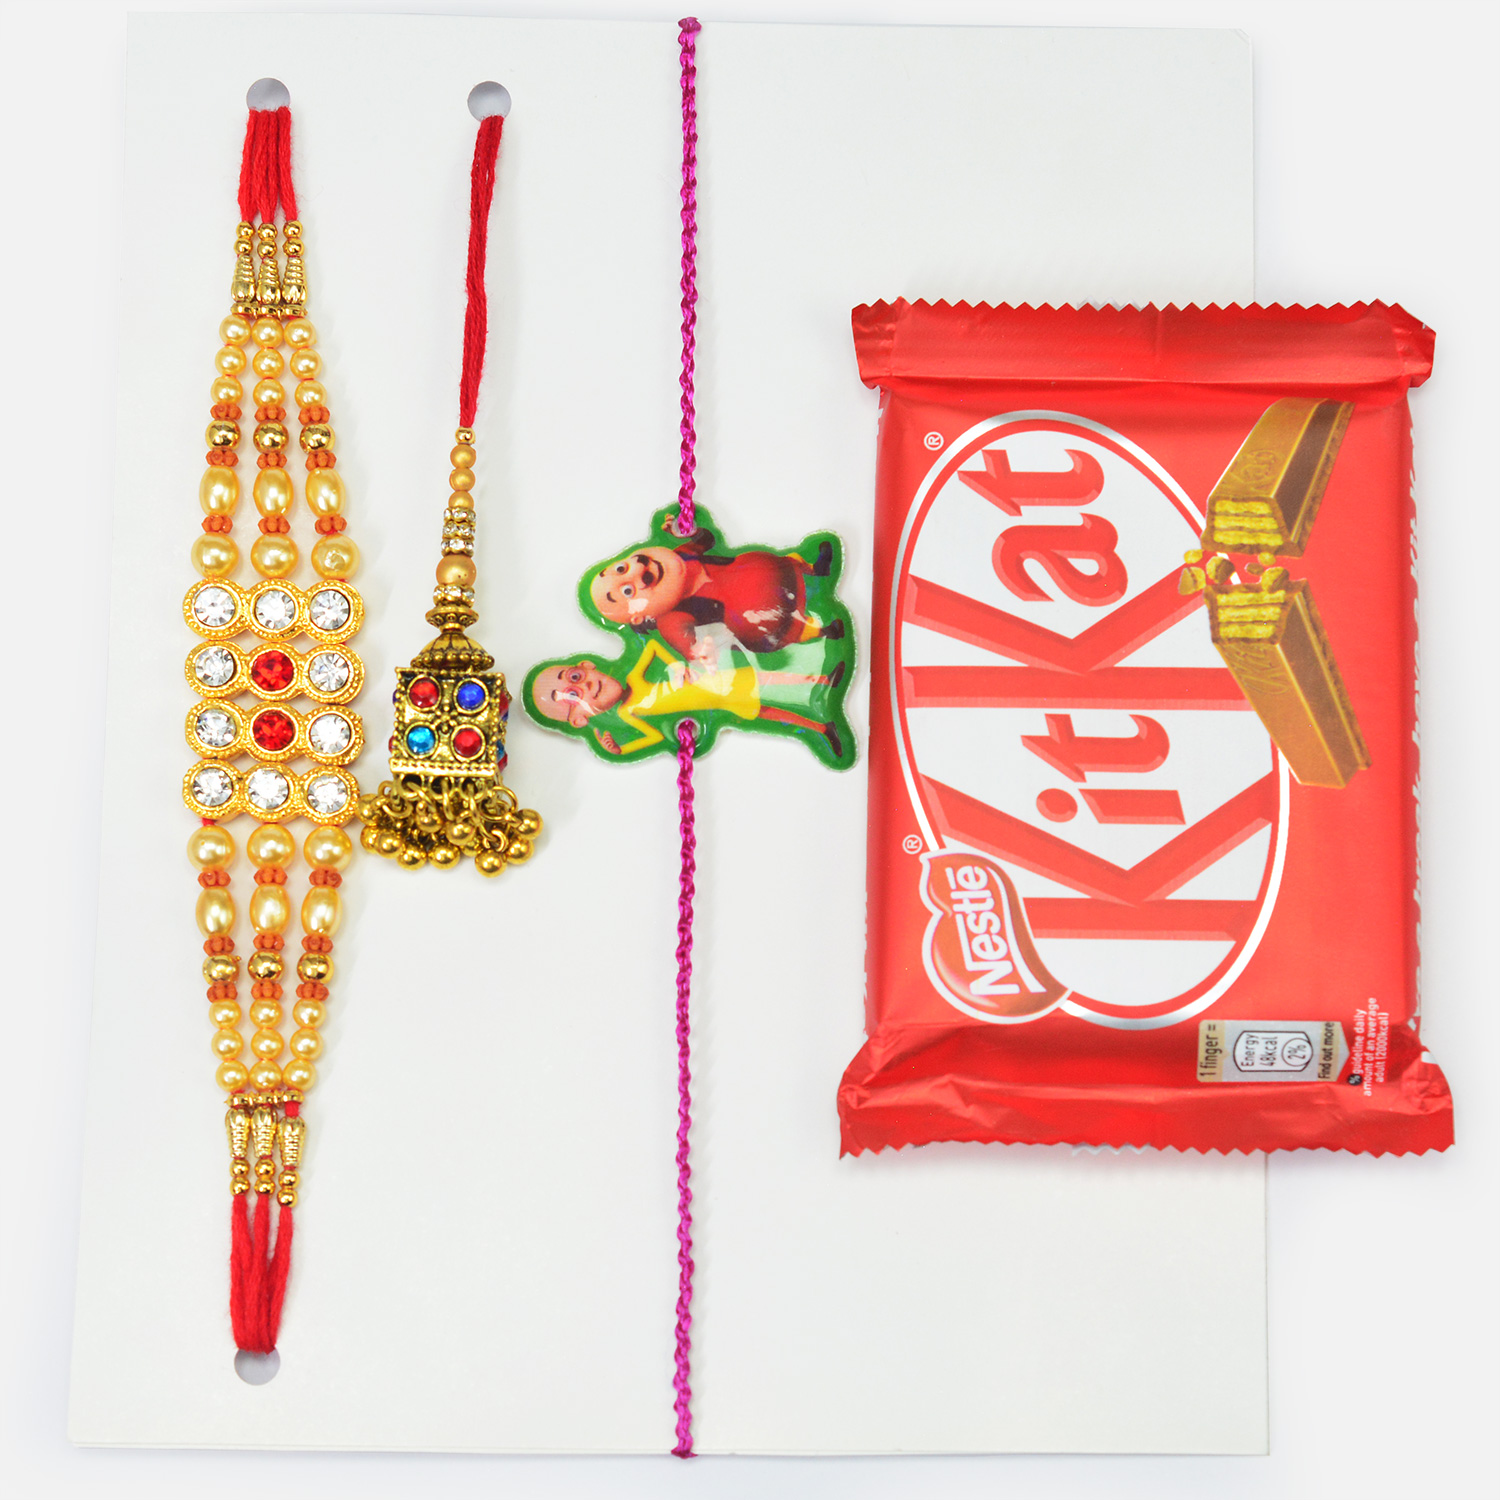 Small Kitkat Chocolate with Family Set of Amazing Rakhis